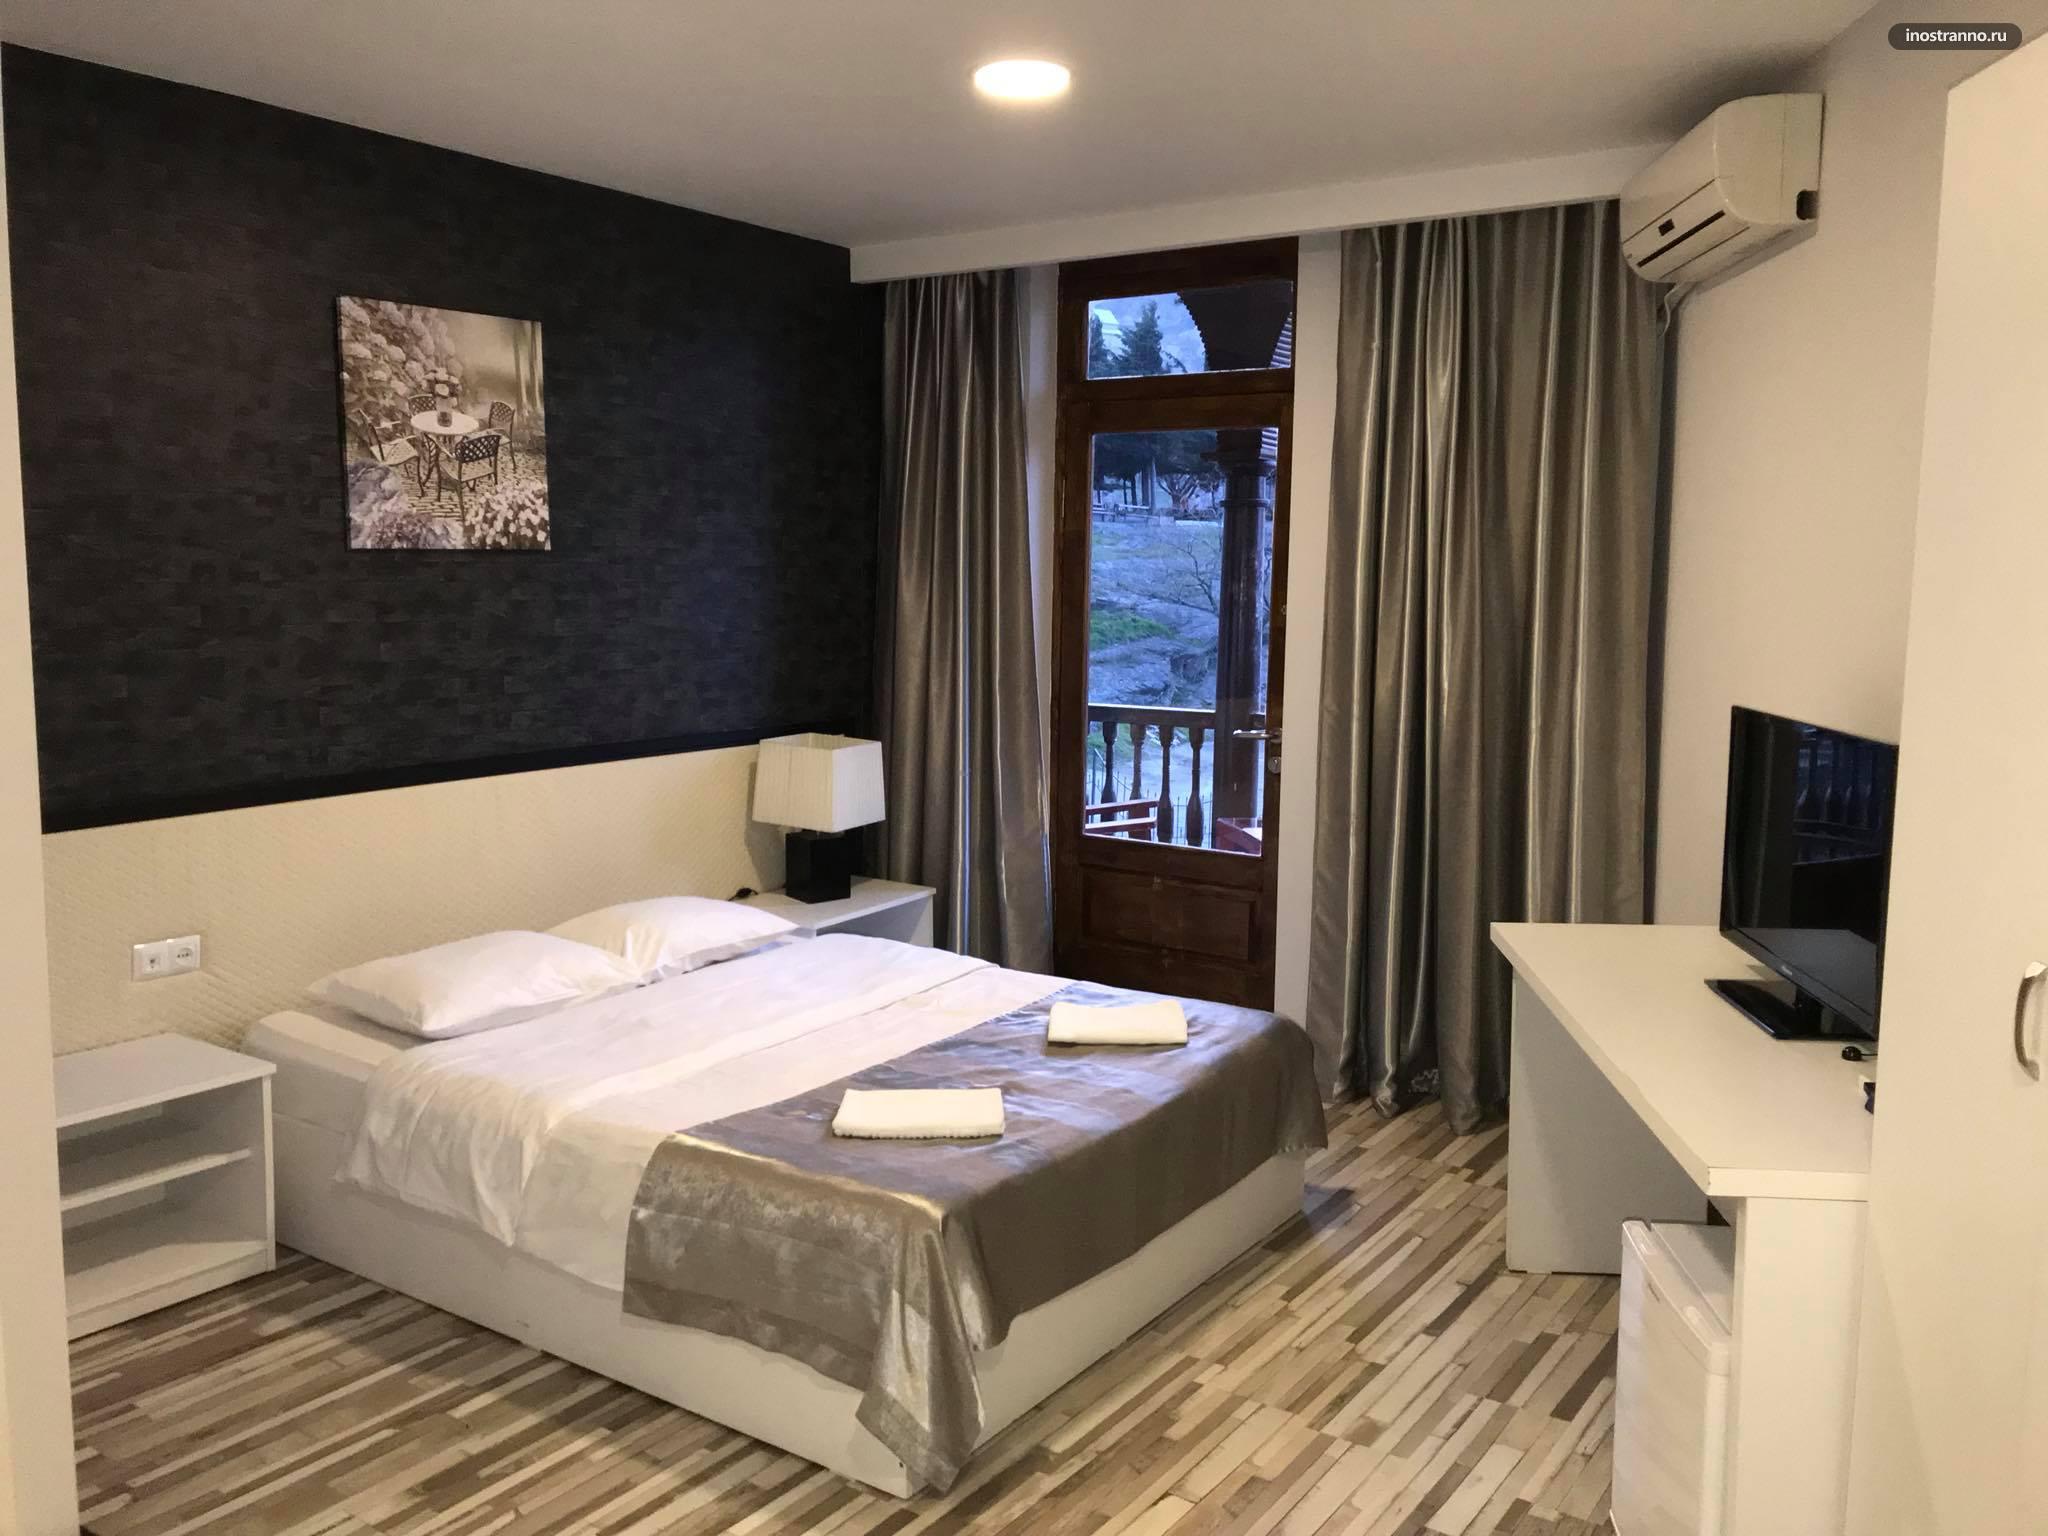 Tiflis Metekhi Hotel лучший отель 3 звезды в Тбилиси